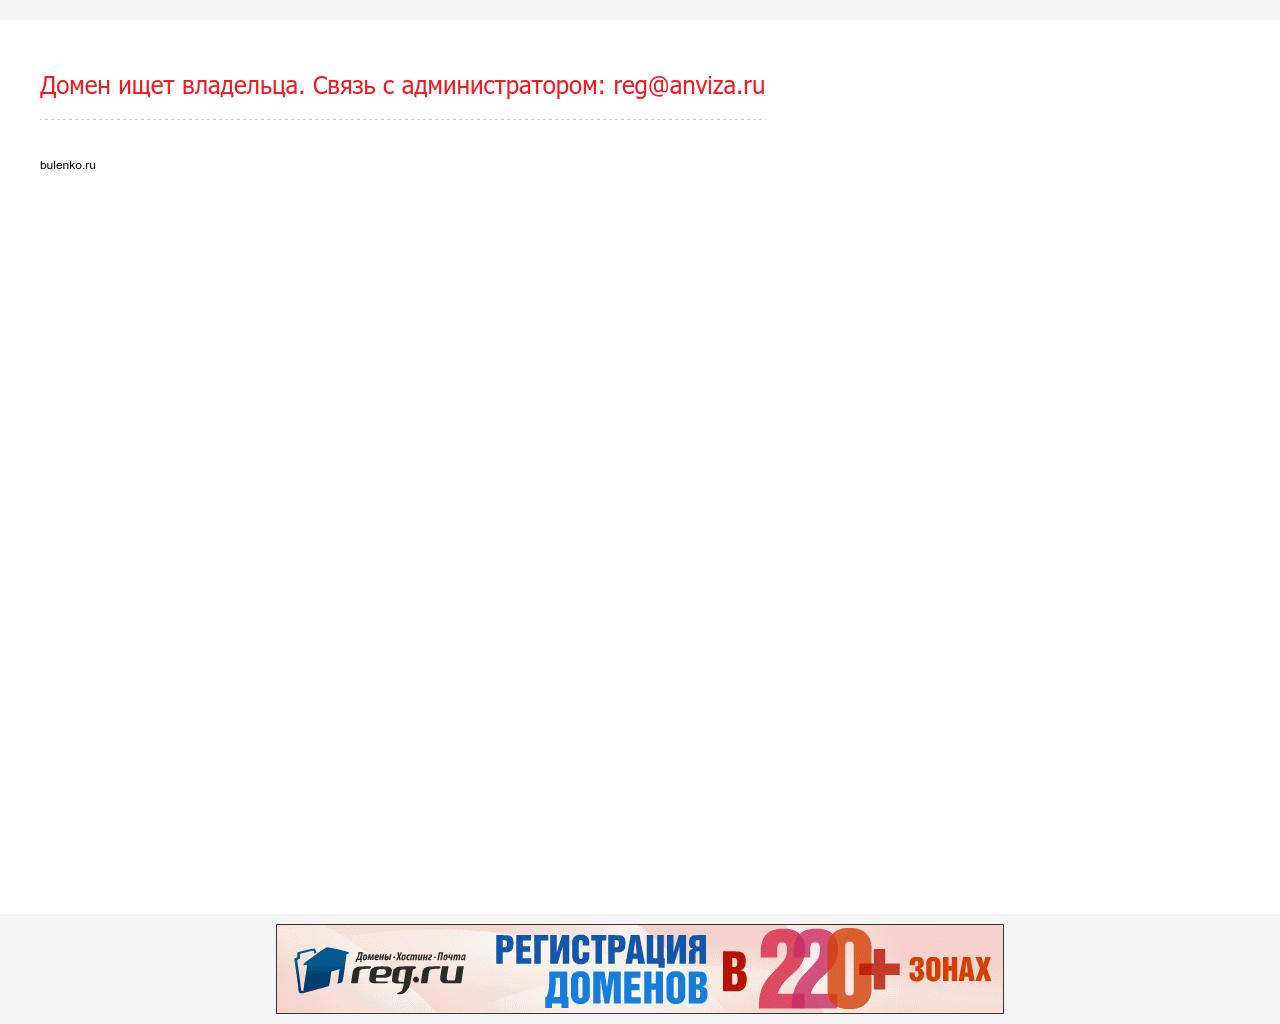 Изображение сайта bulenko.ru в разрешении 1280x1024